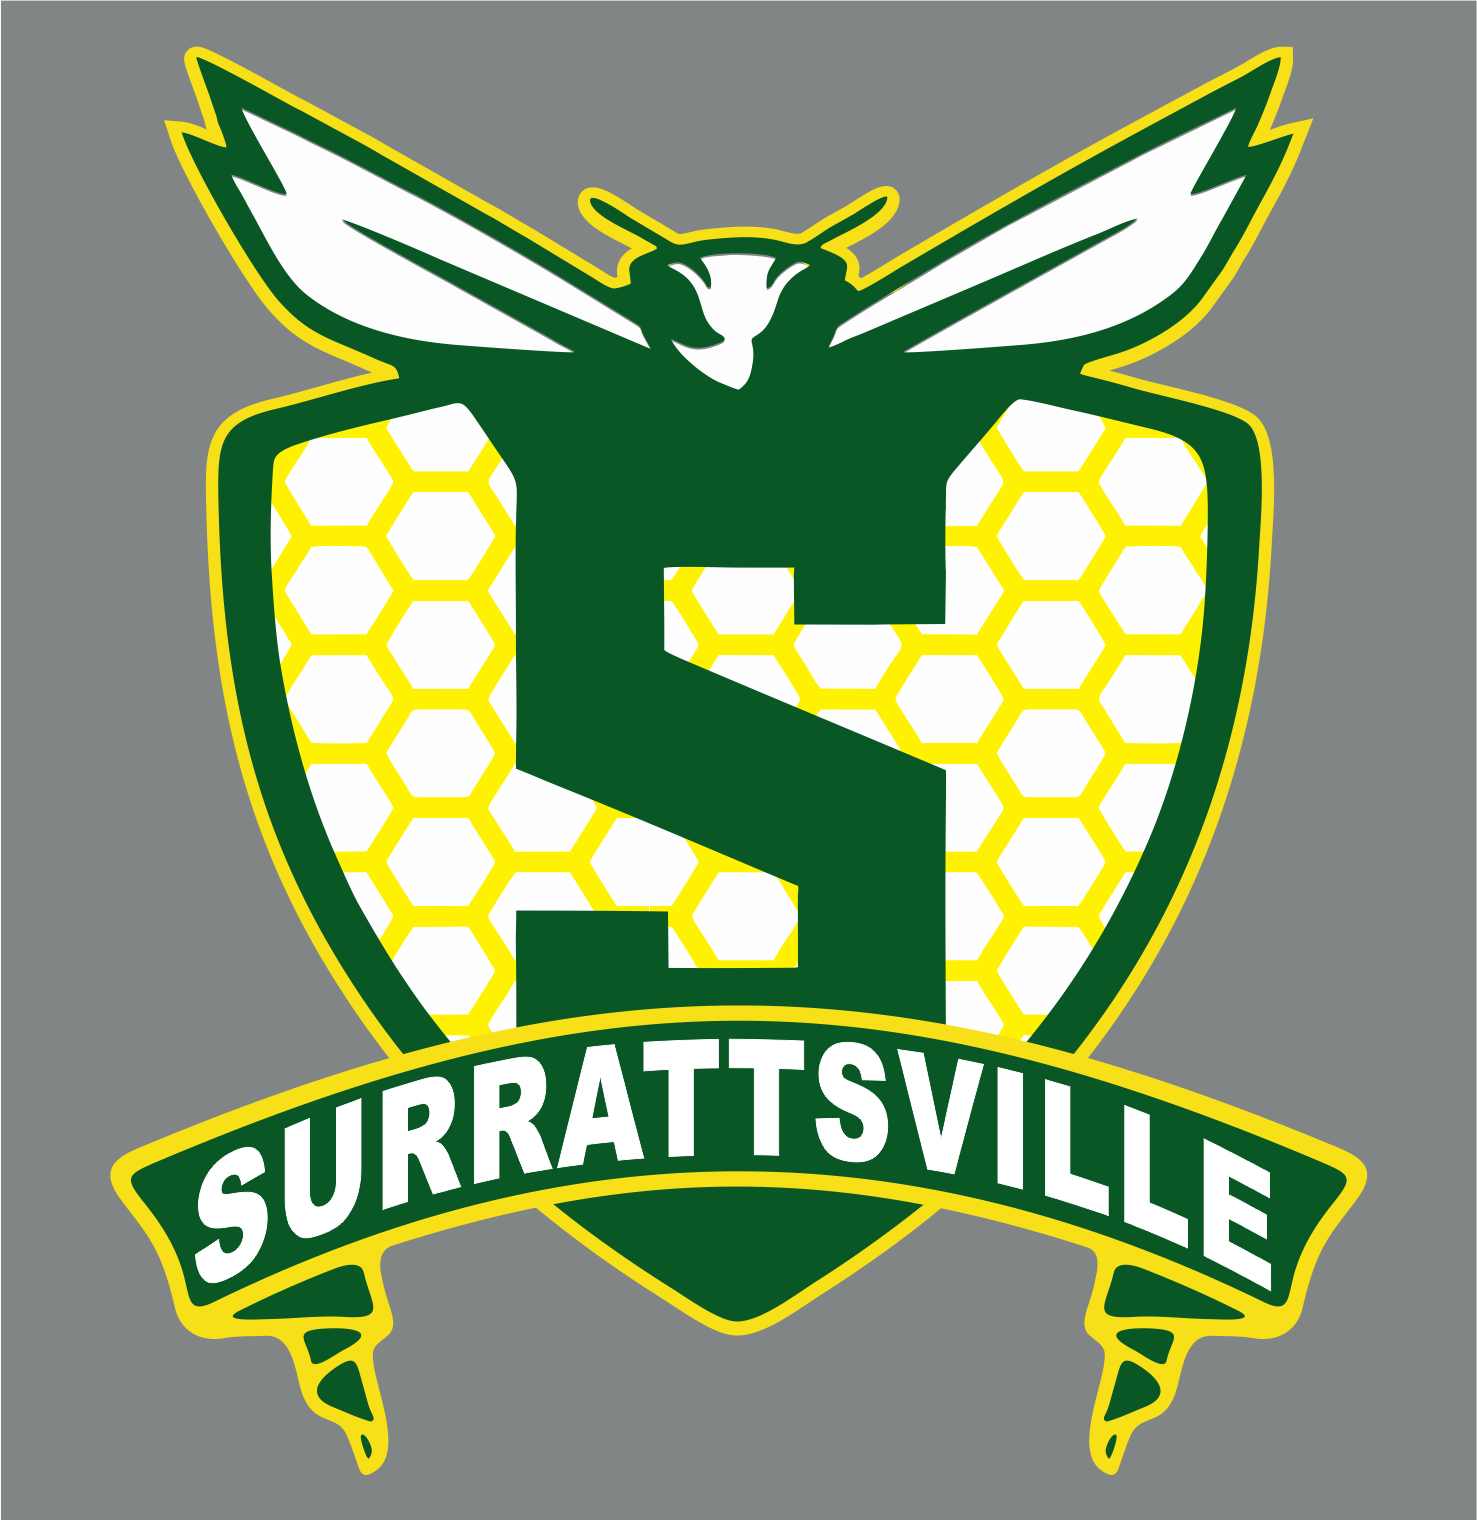 Surrattsville High School